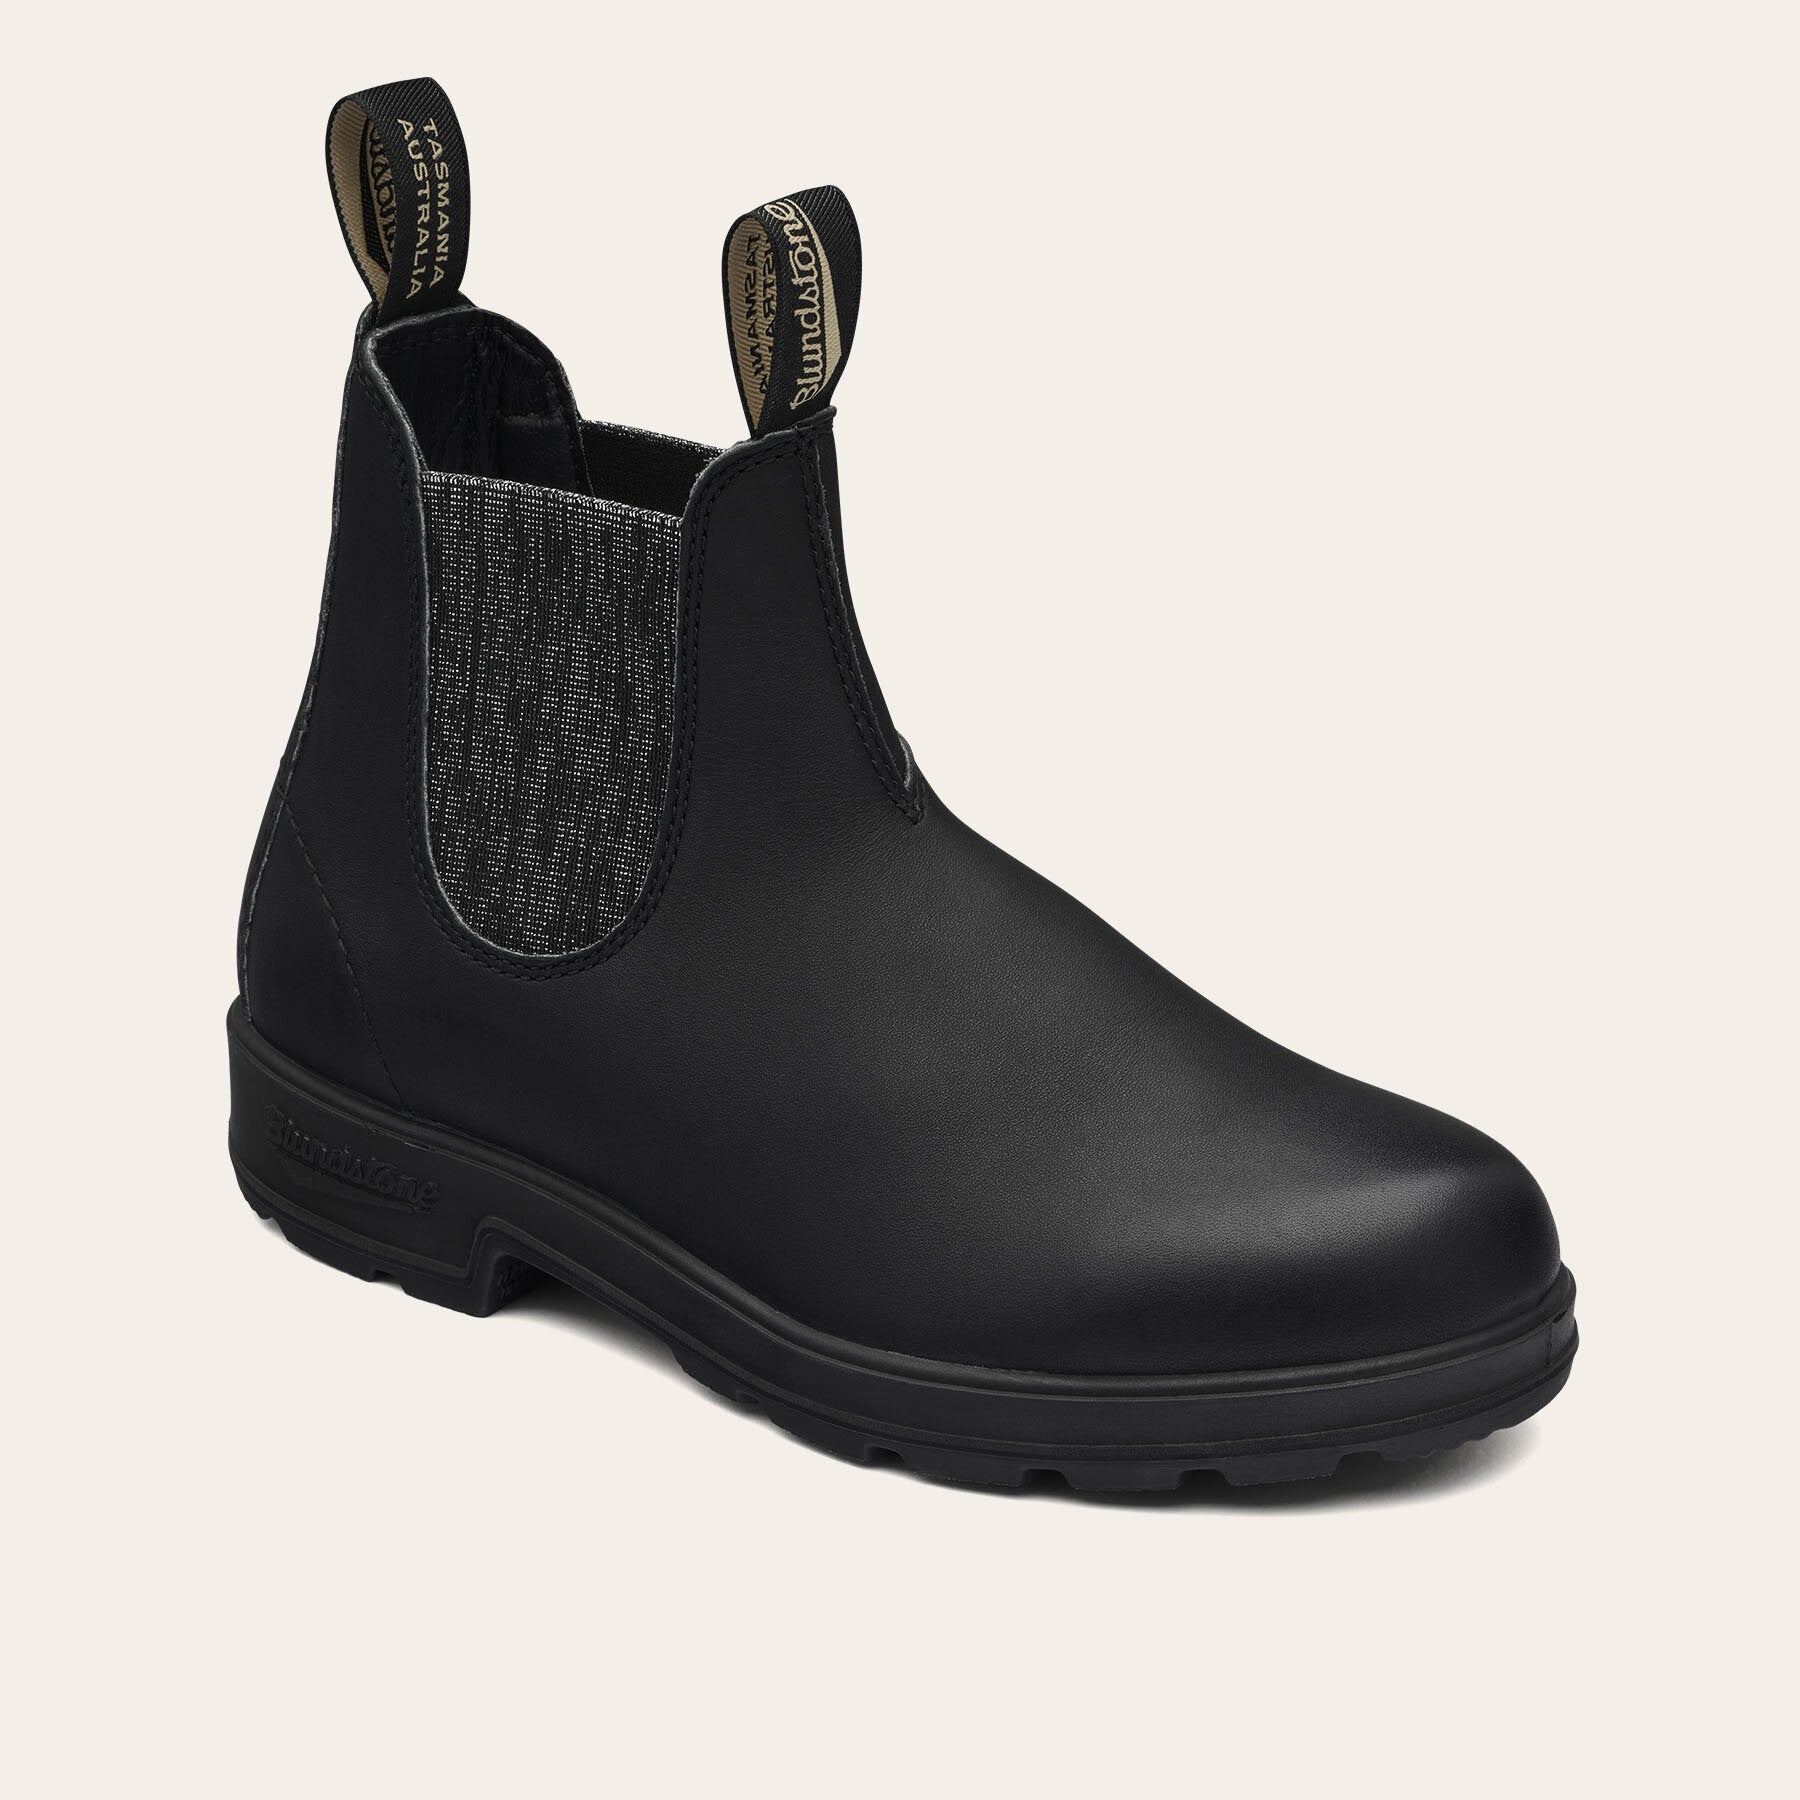 85% Codice Sconto 2032 ORIGINALS BLACK & SILVER GLITTER blundstone scarpe